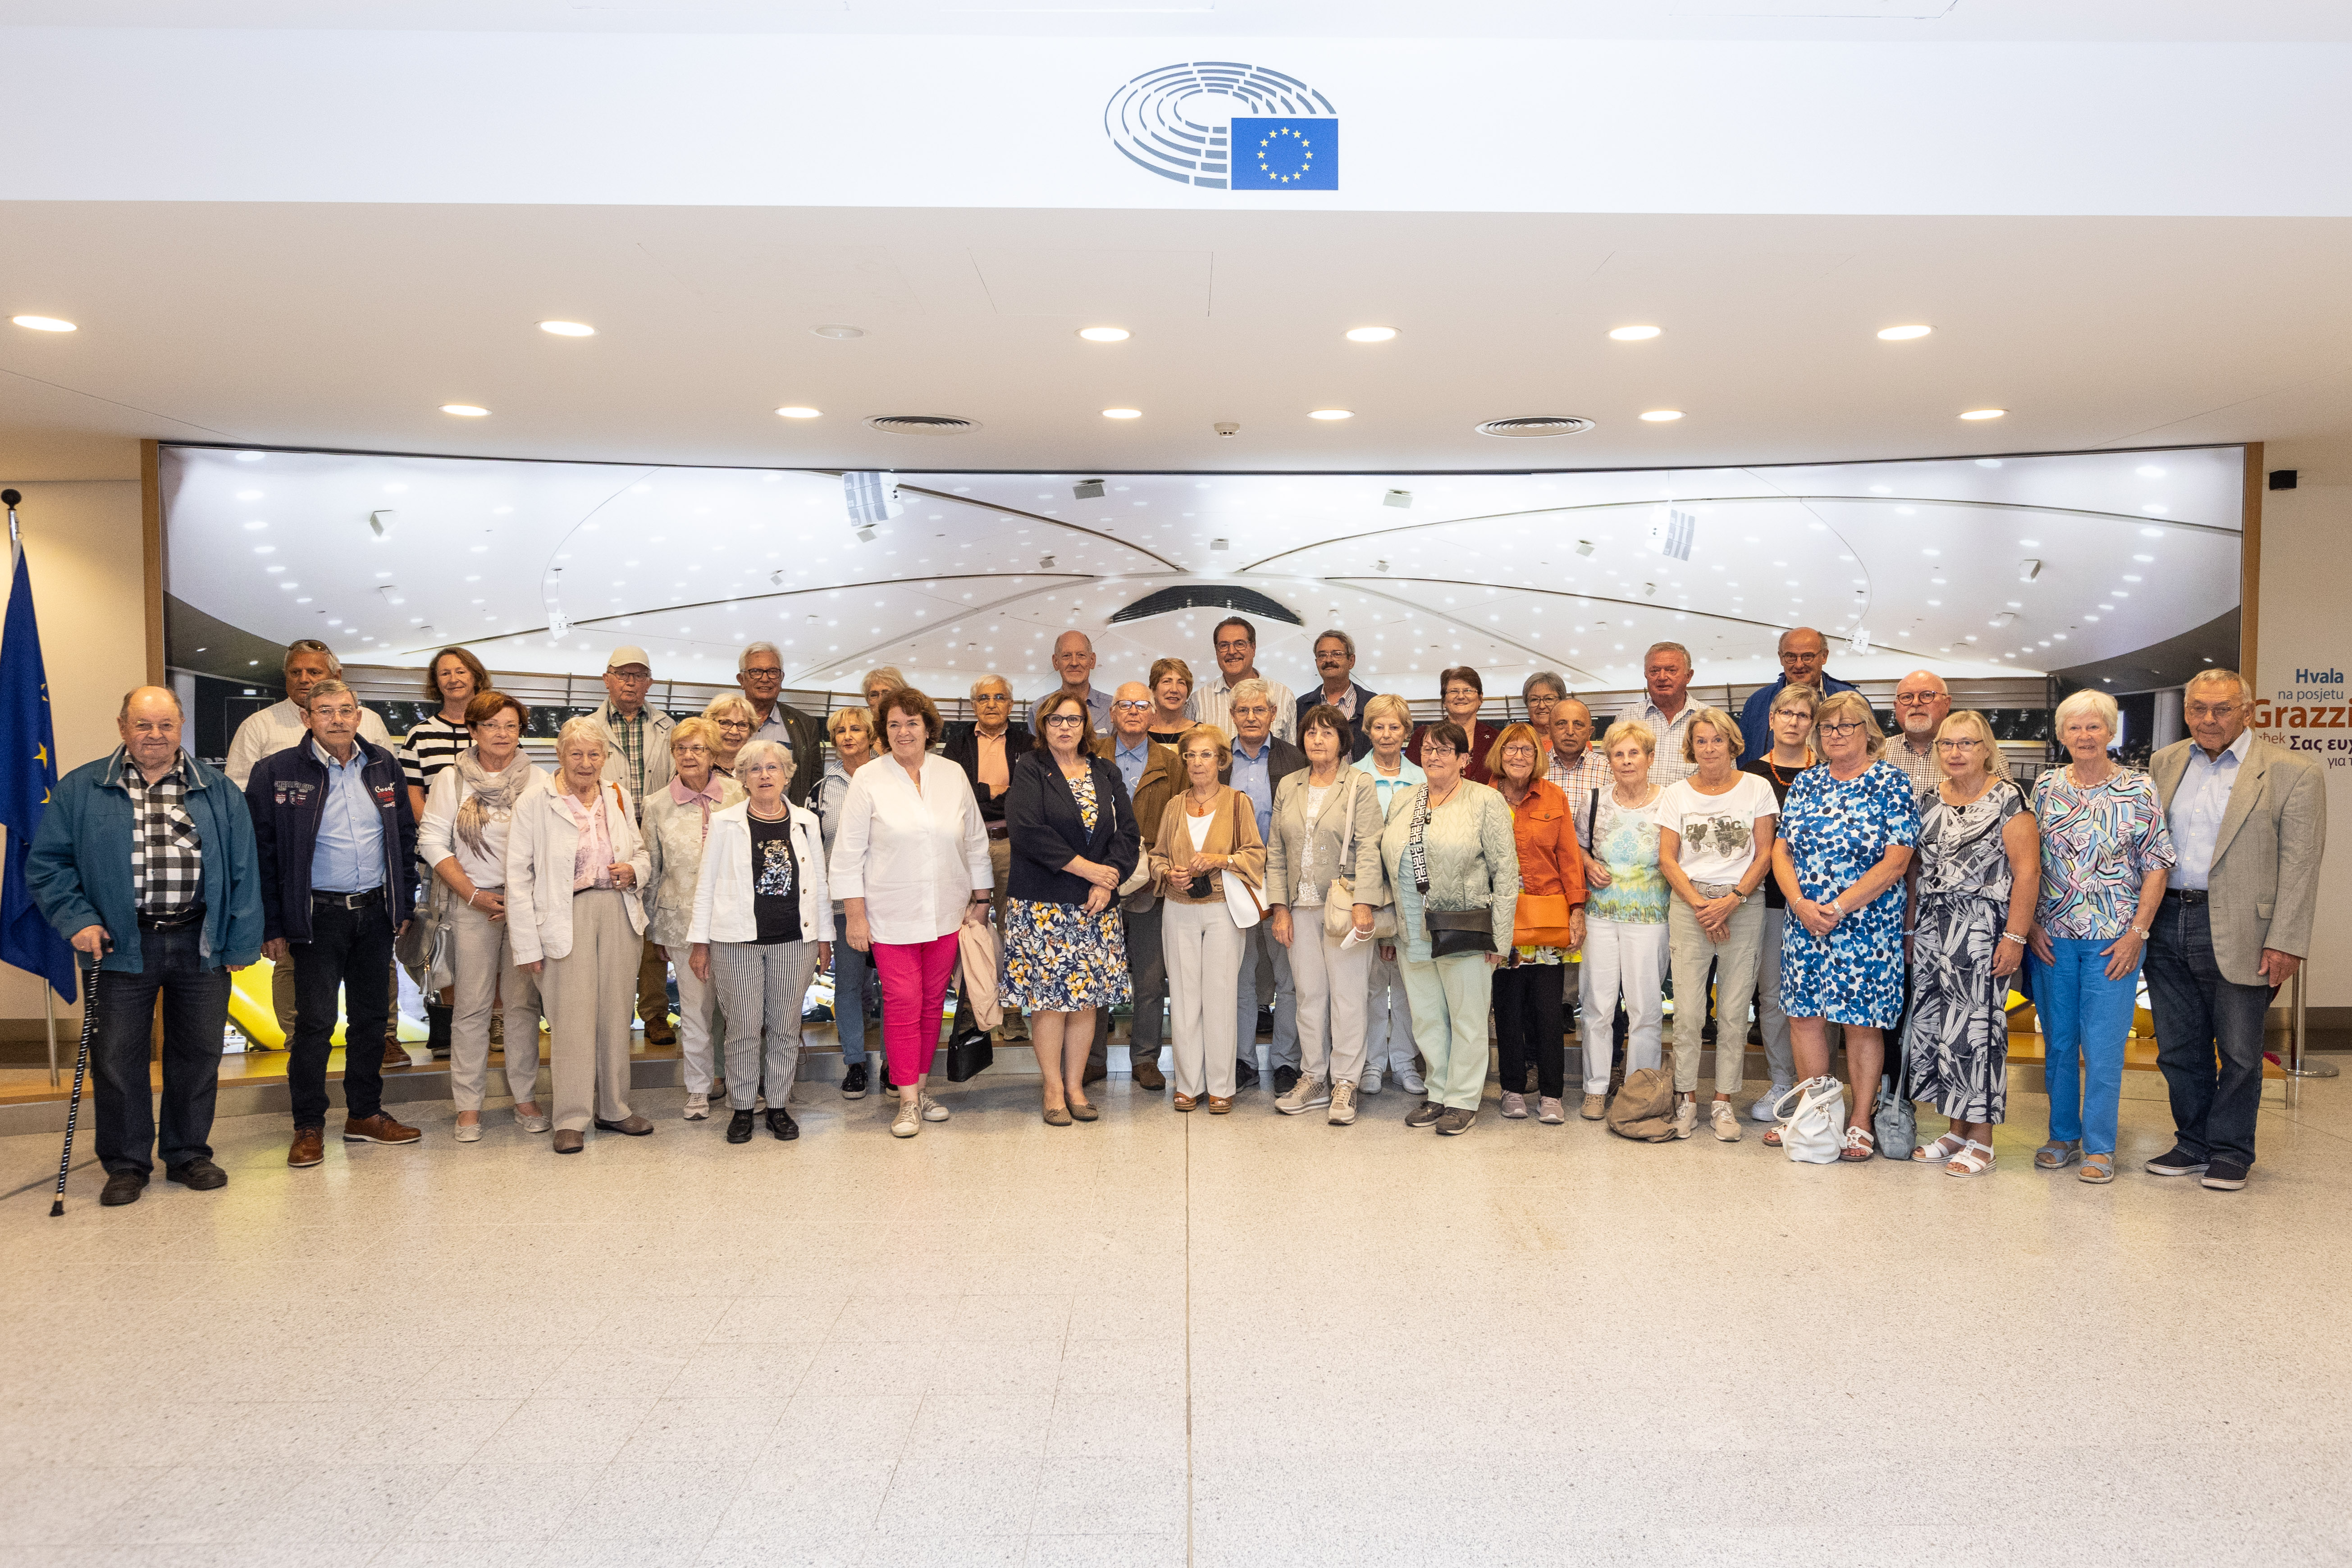 Der Besuch der Senioren Union, durch den Kreisvorsitzenden Klaus Steingießer und die stv. Vorsitzende Monika Lux gut vorbereitet, war ein voller Erfolg.